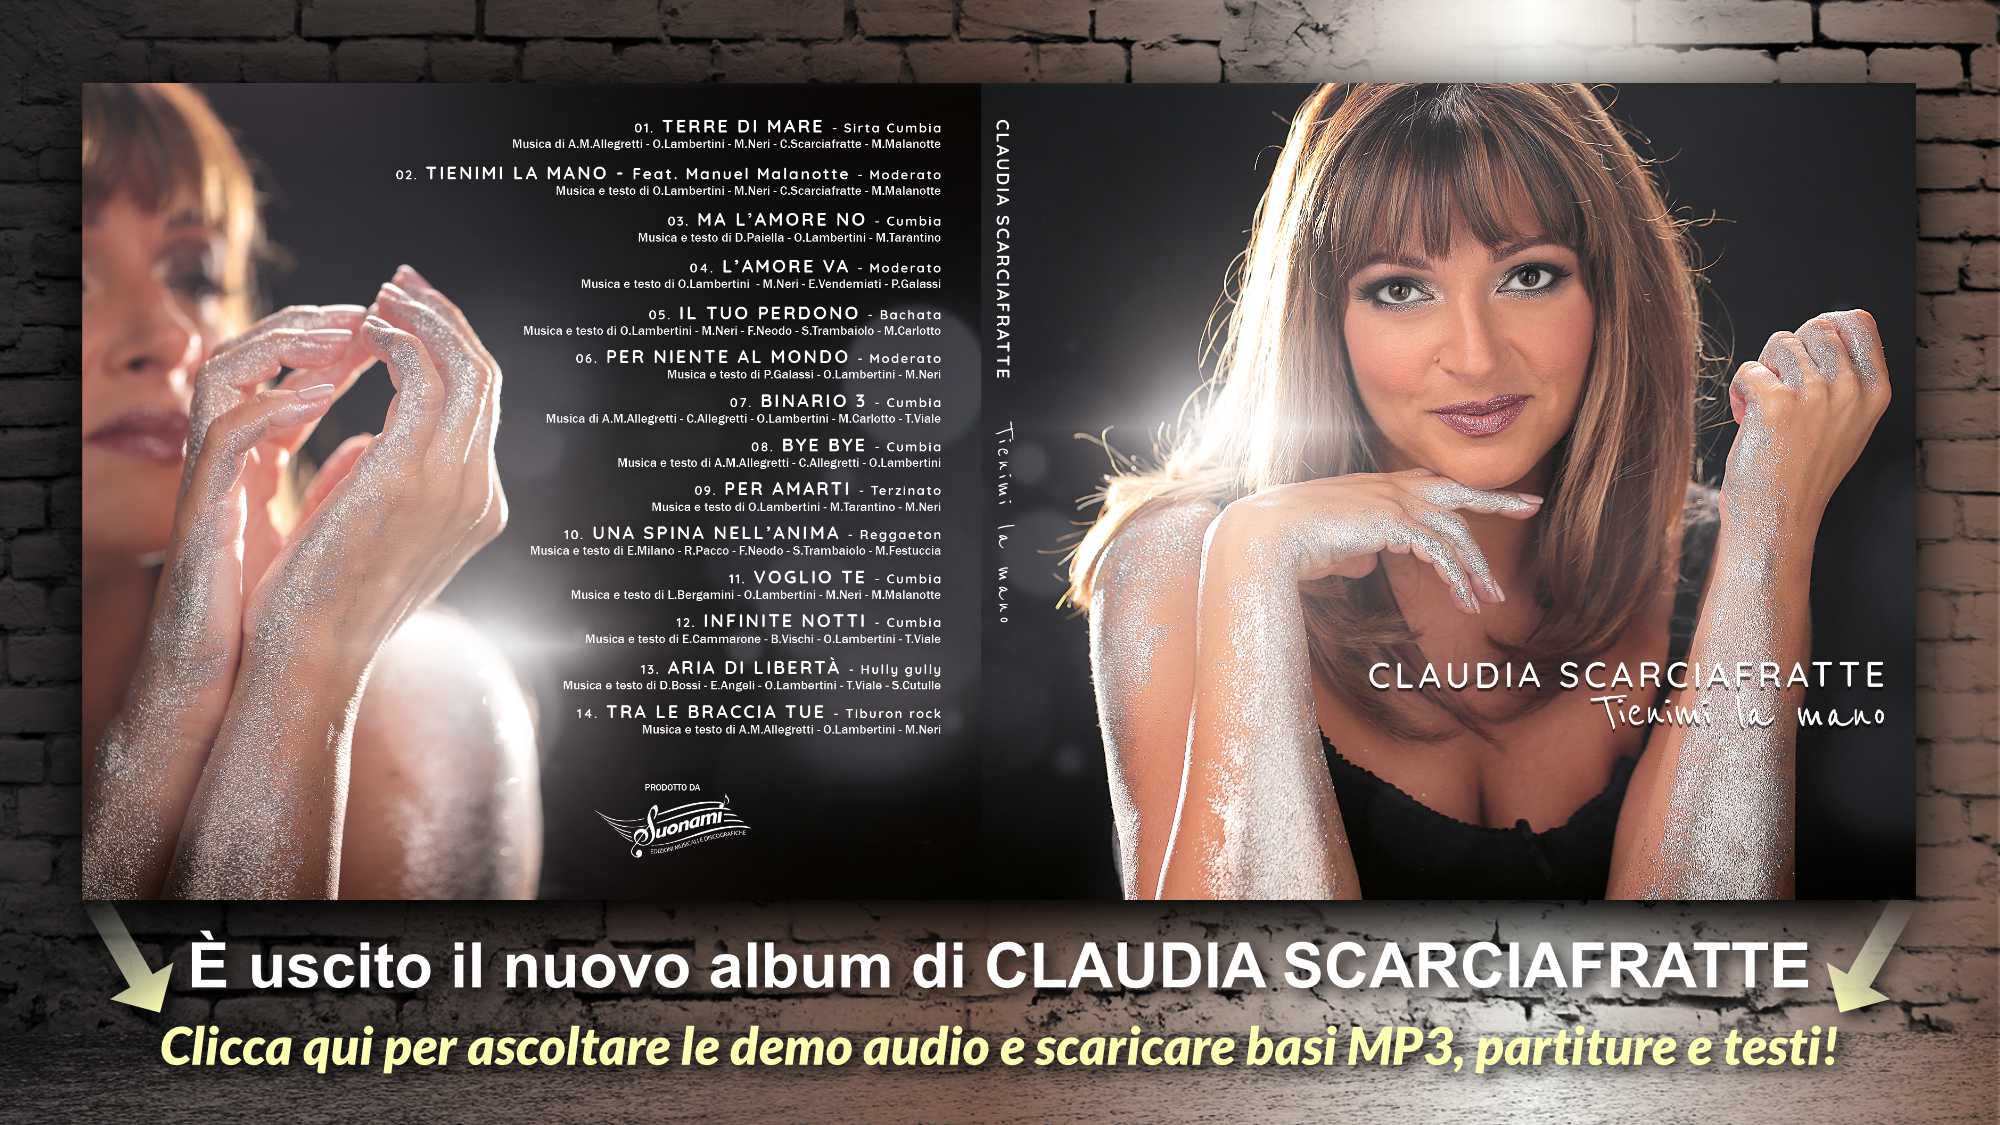 Tienimi la mano - Claudia Scarciafratte